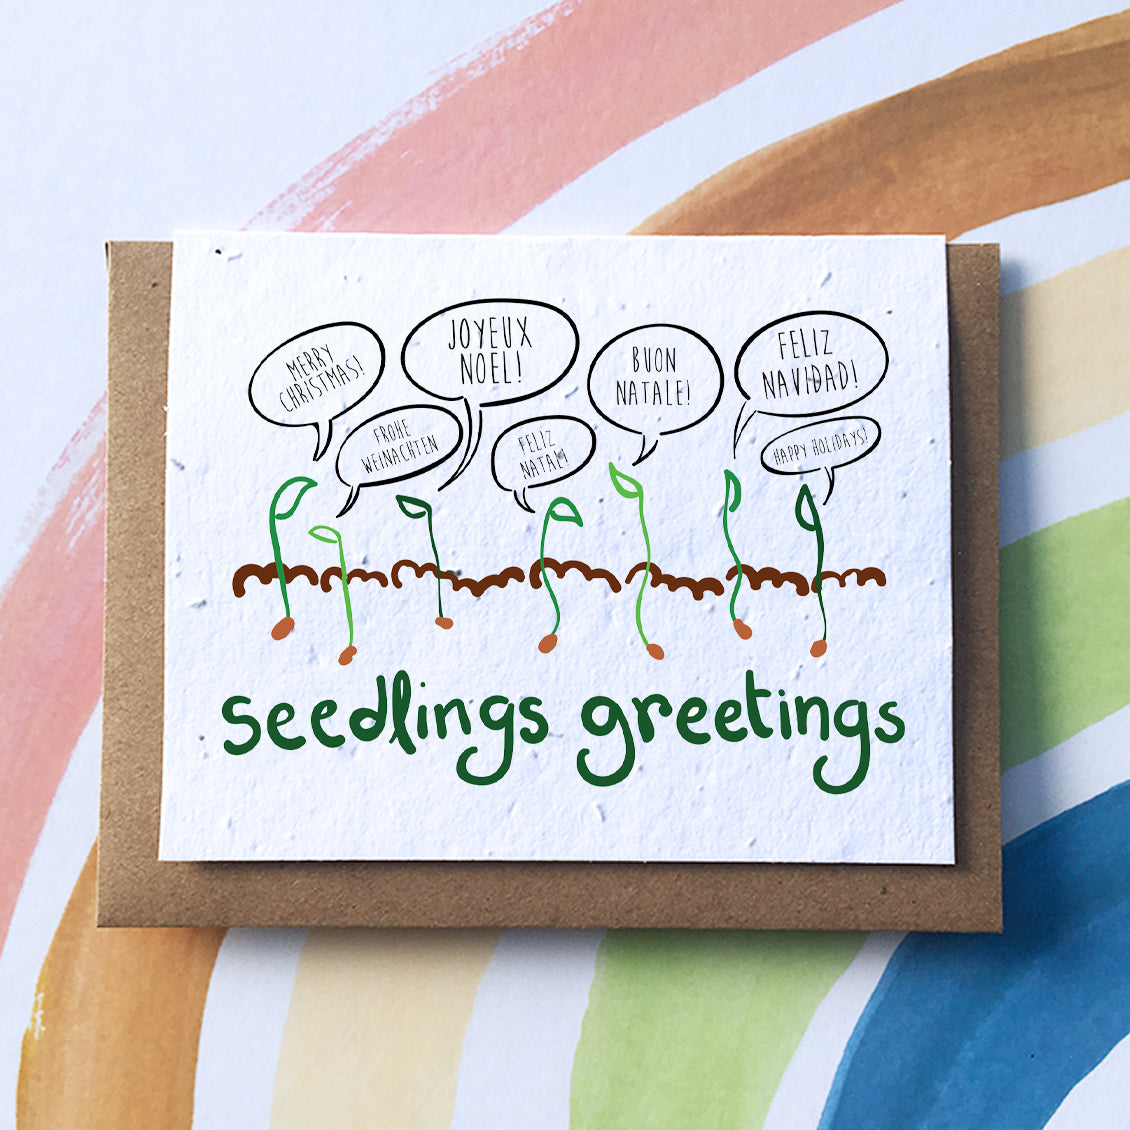 <img src="seasons.jpg" alt="Seasons seedlings greetings Christmas sustainable zero waste greeting card">